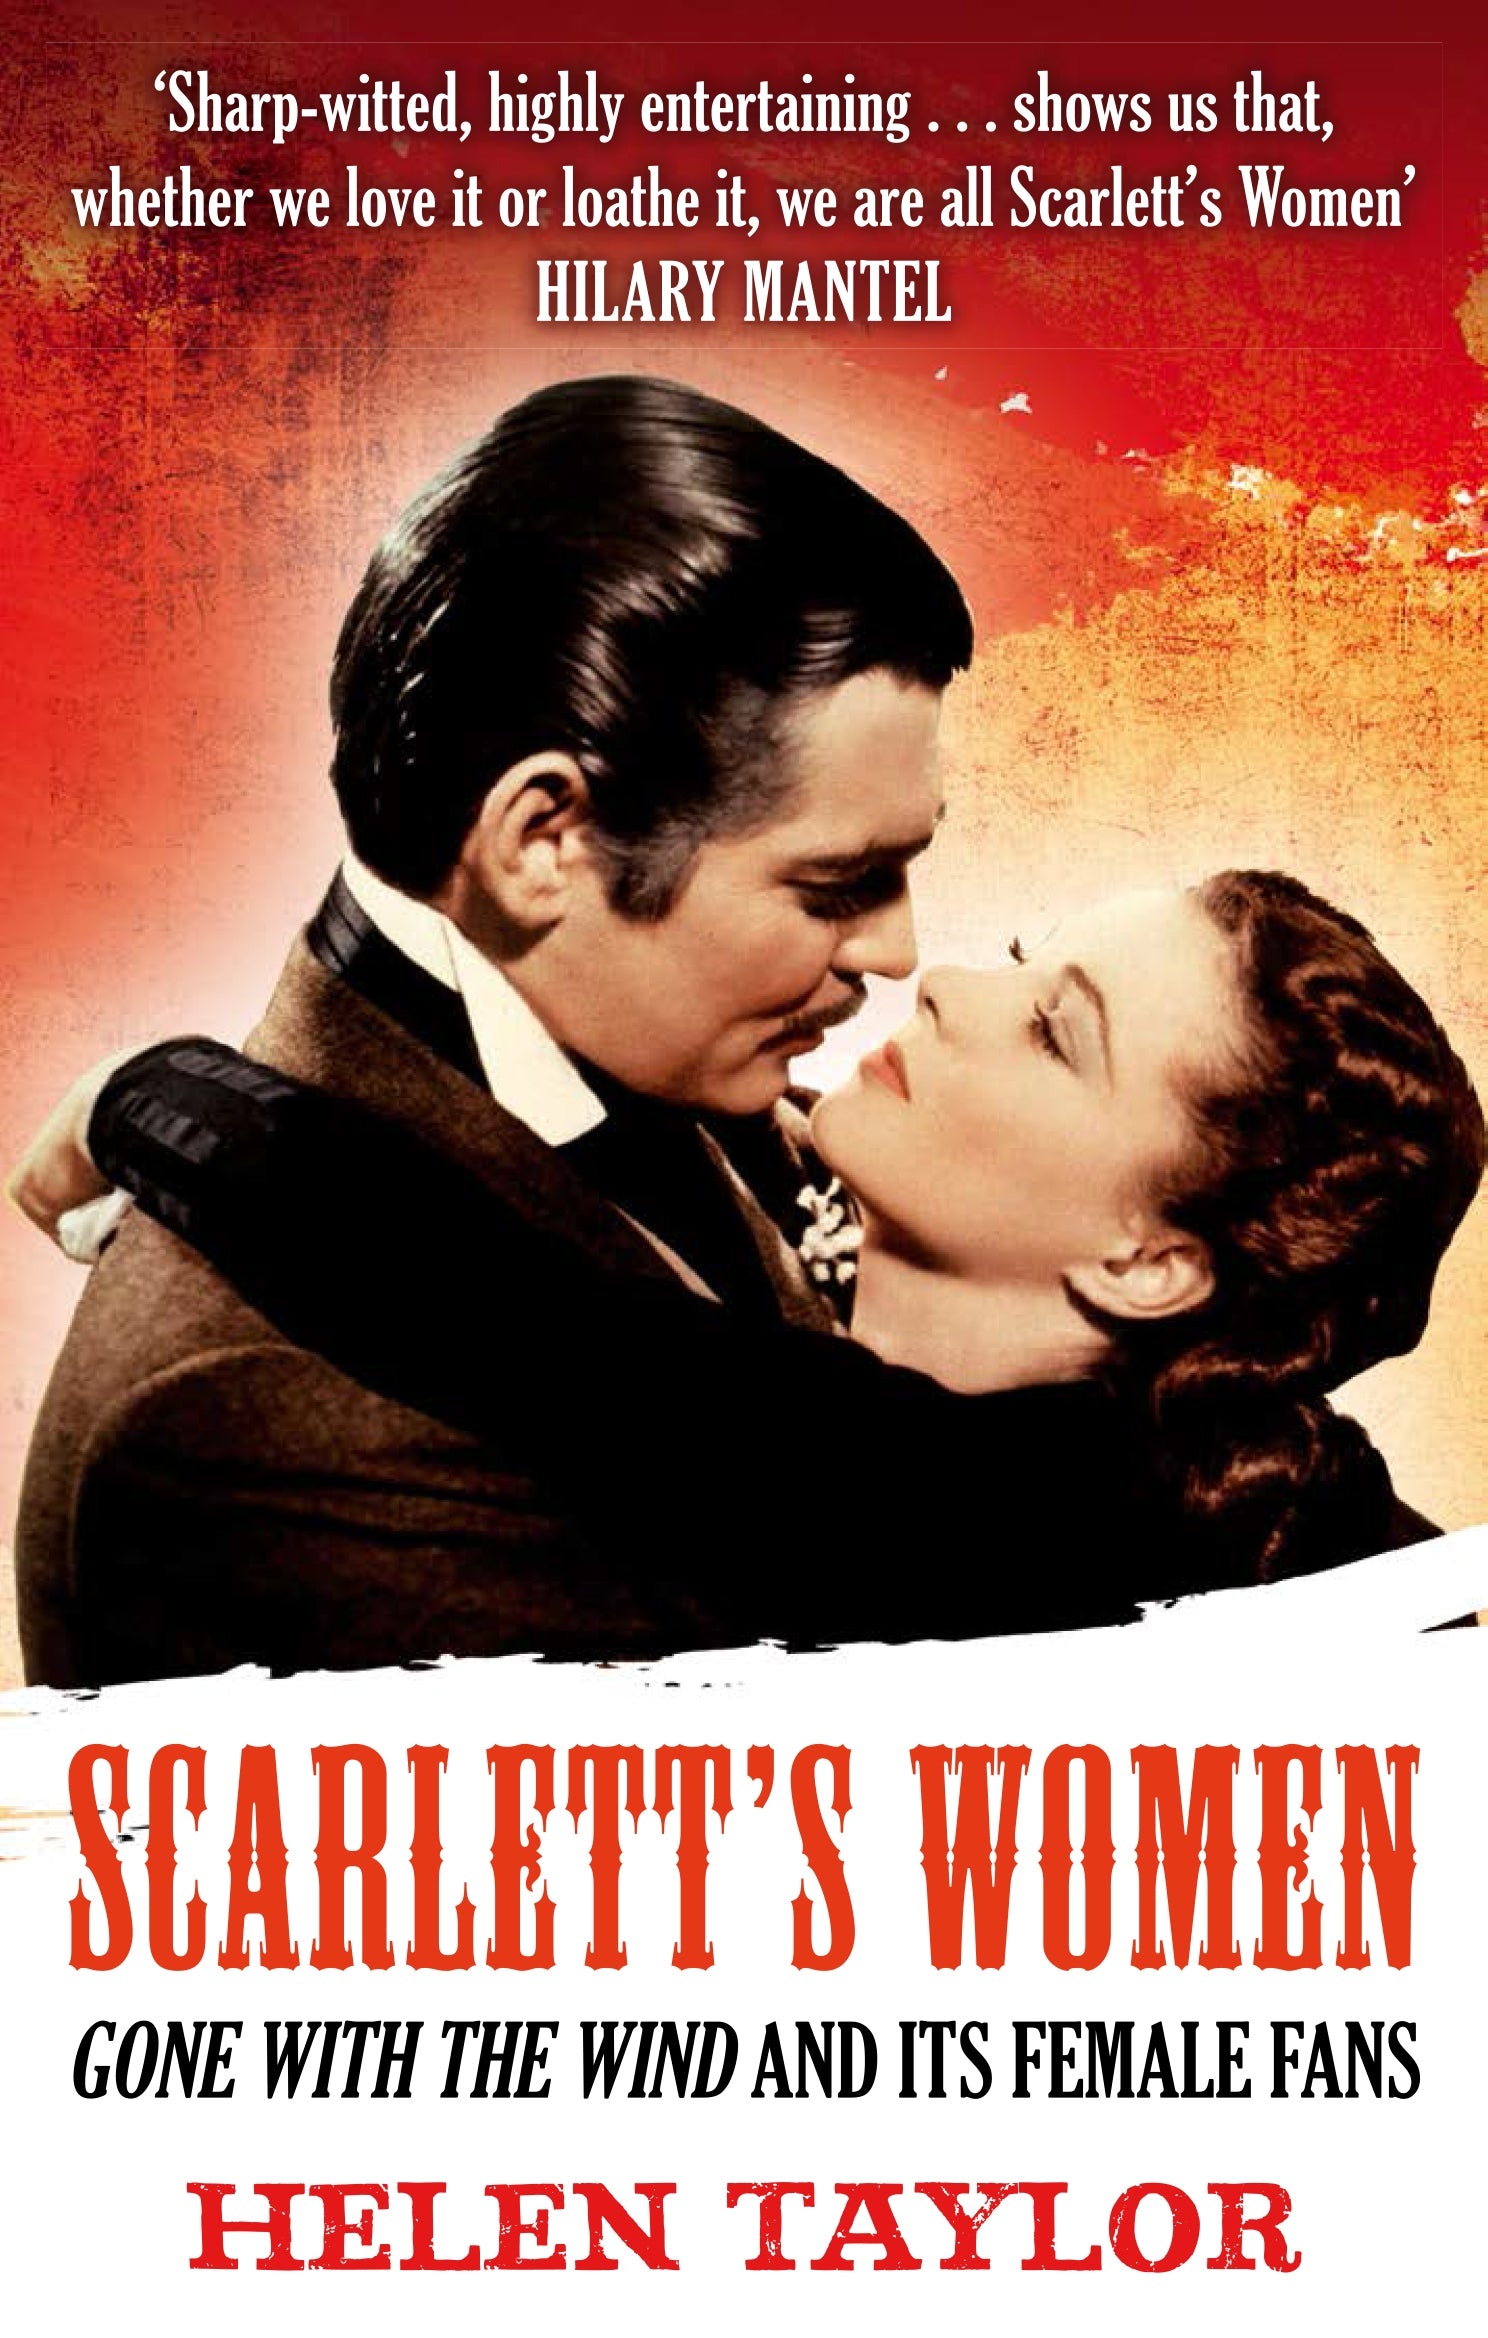 Scarlett's Women by Helen Taylor